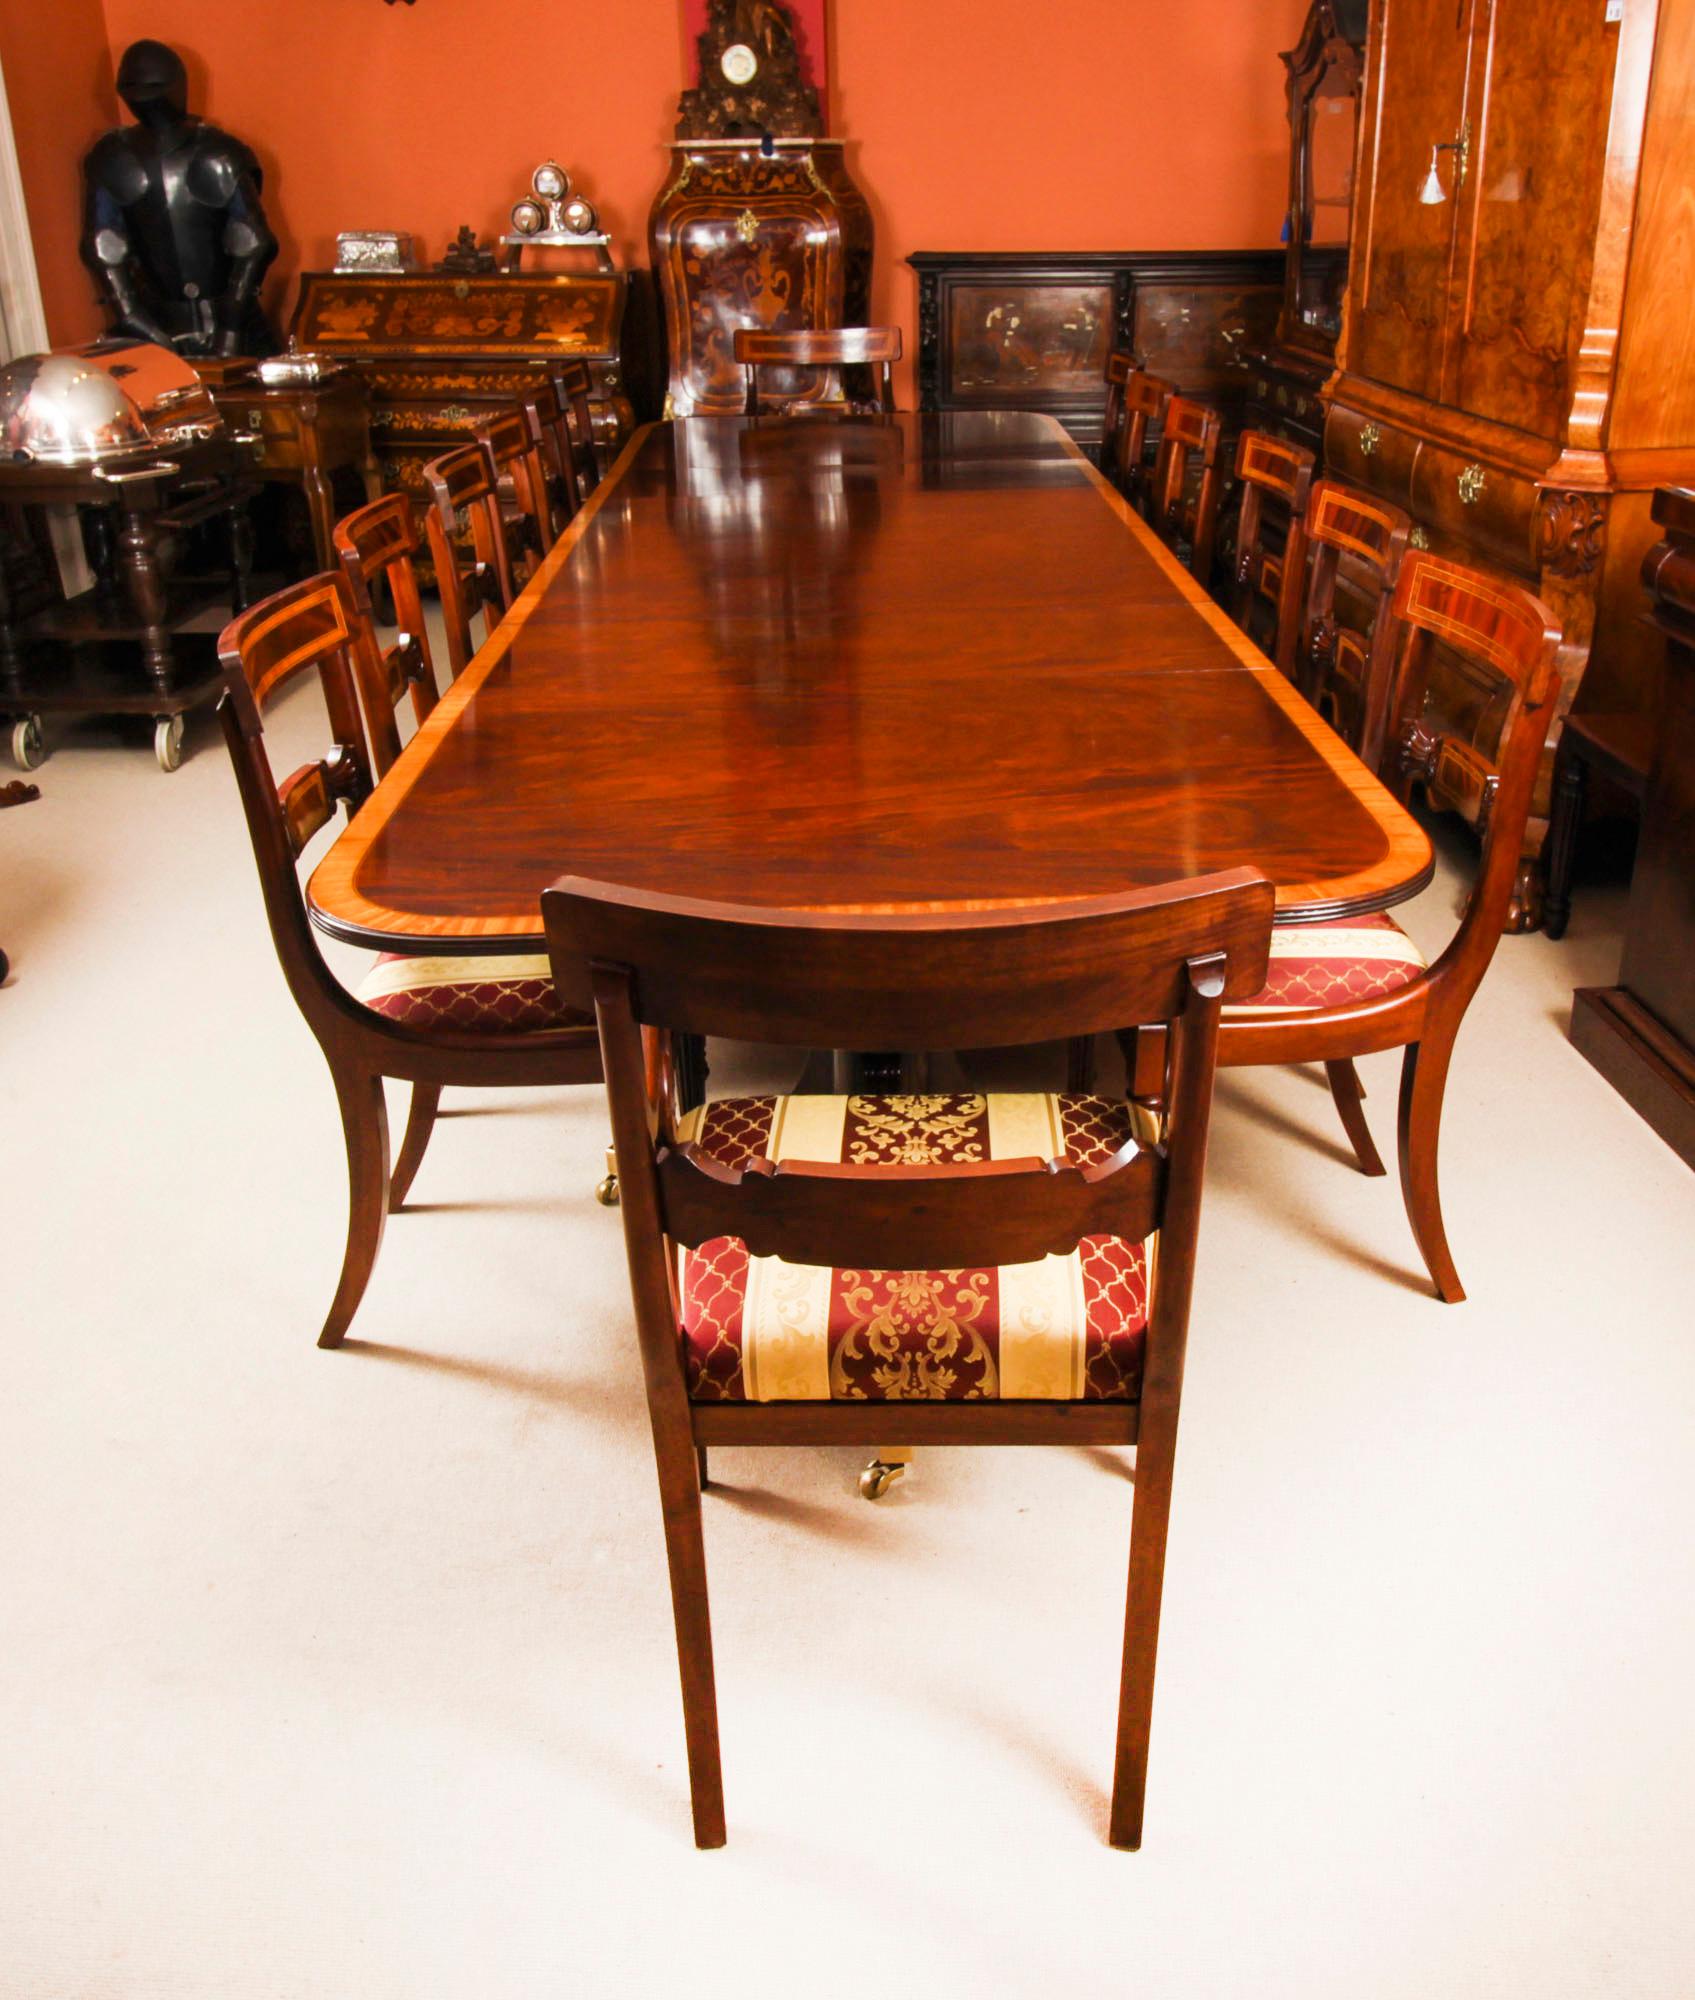 Dies ist ein hervorragendes Esszimmer-Set, bestehend aus einem 13ft Vintage Regency Revival Esstisch  mit vierzehn Hepplewhite-Revival-Esszimmerstühlen, die aus der zweiten Hälfte des 20.

Die Tischplatte wurde aus geflammtem Mahagoniholz gefertigt